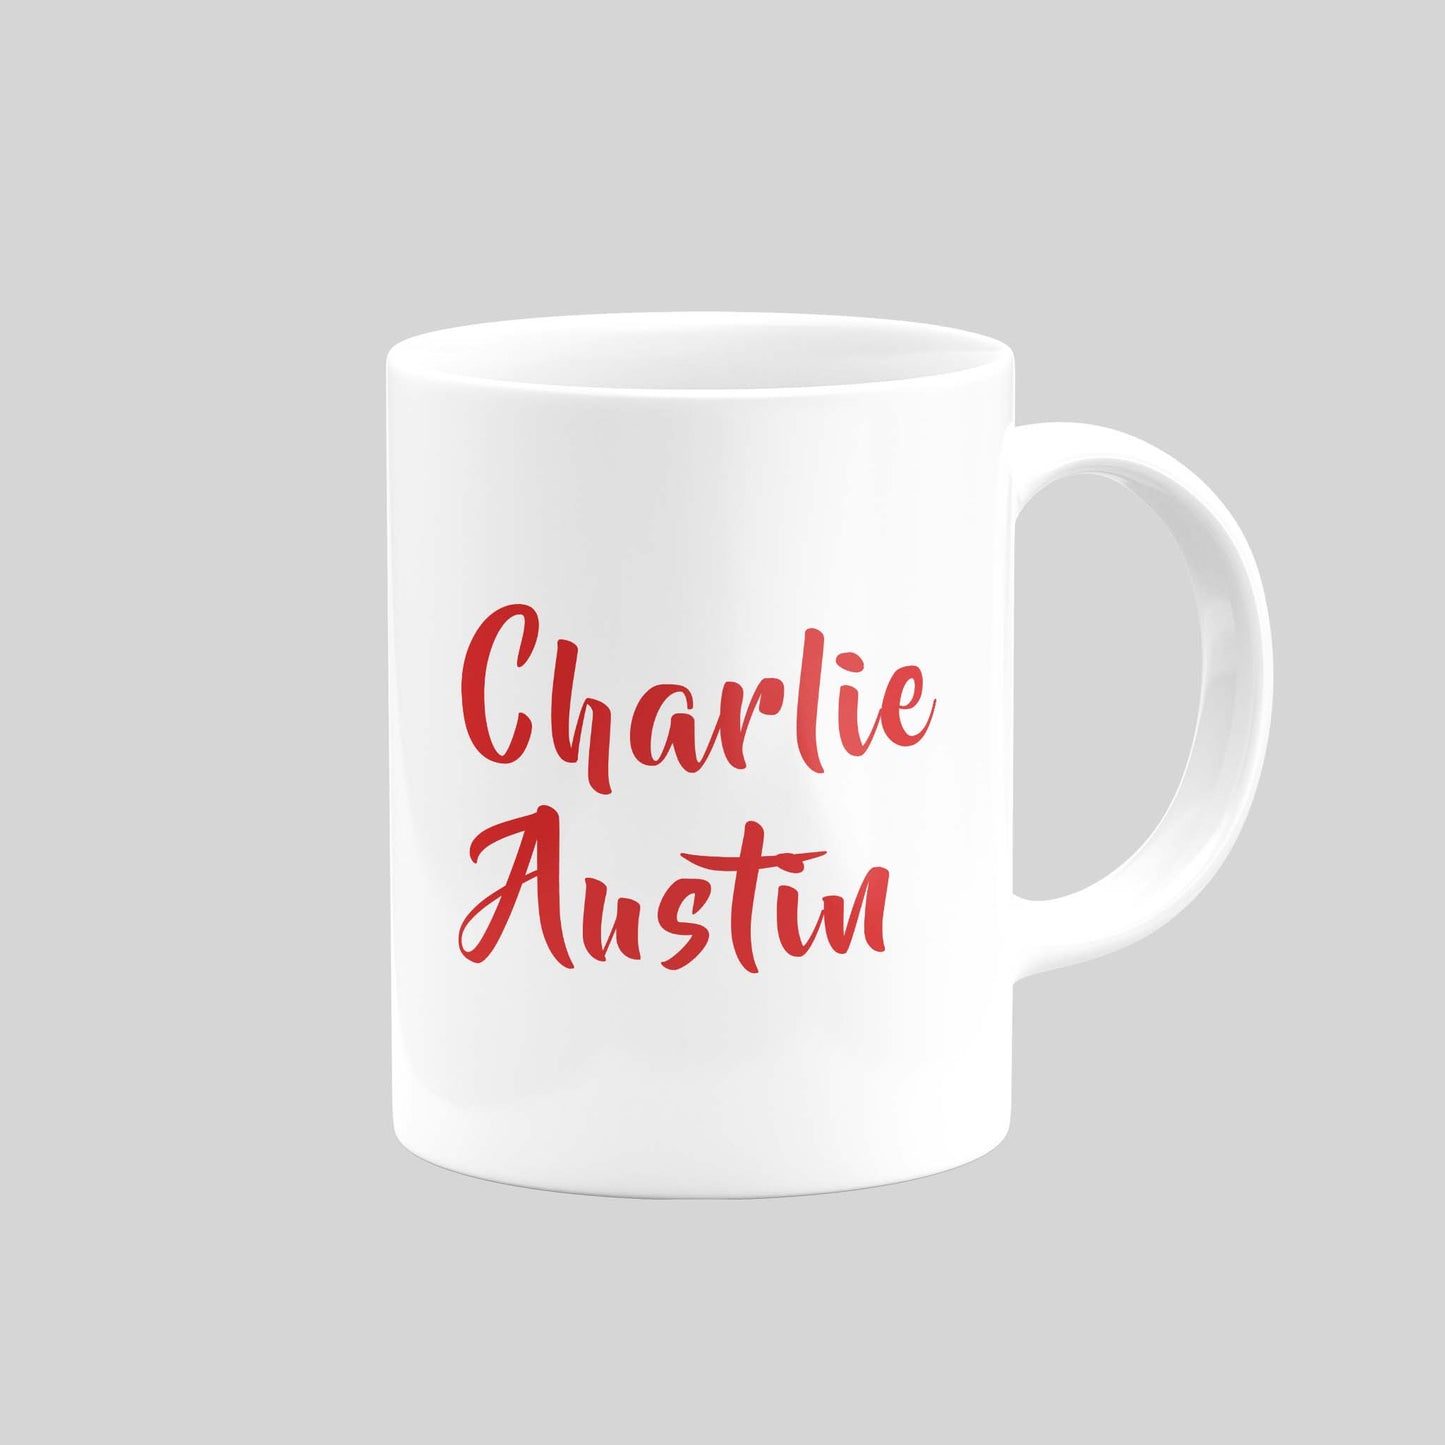 Charlie Austin Mug